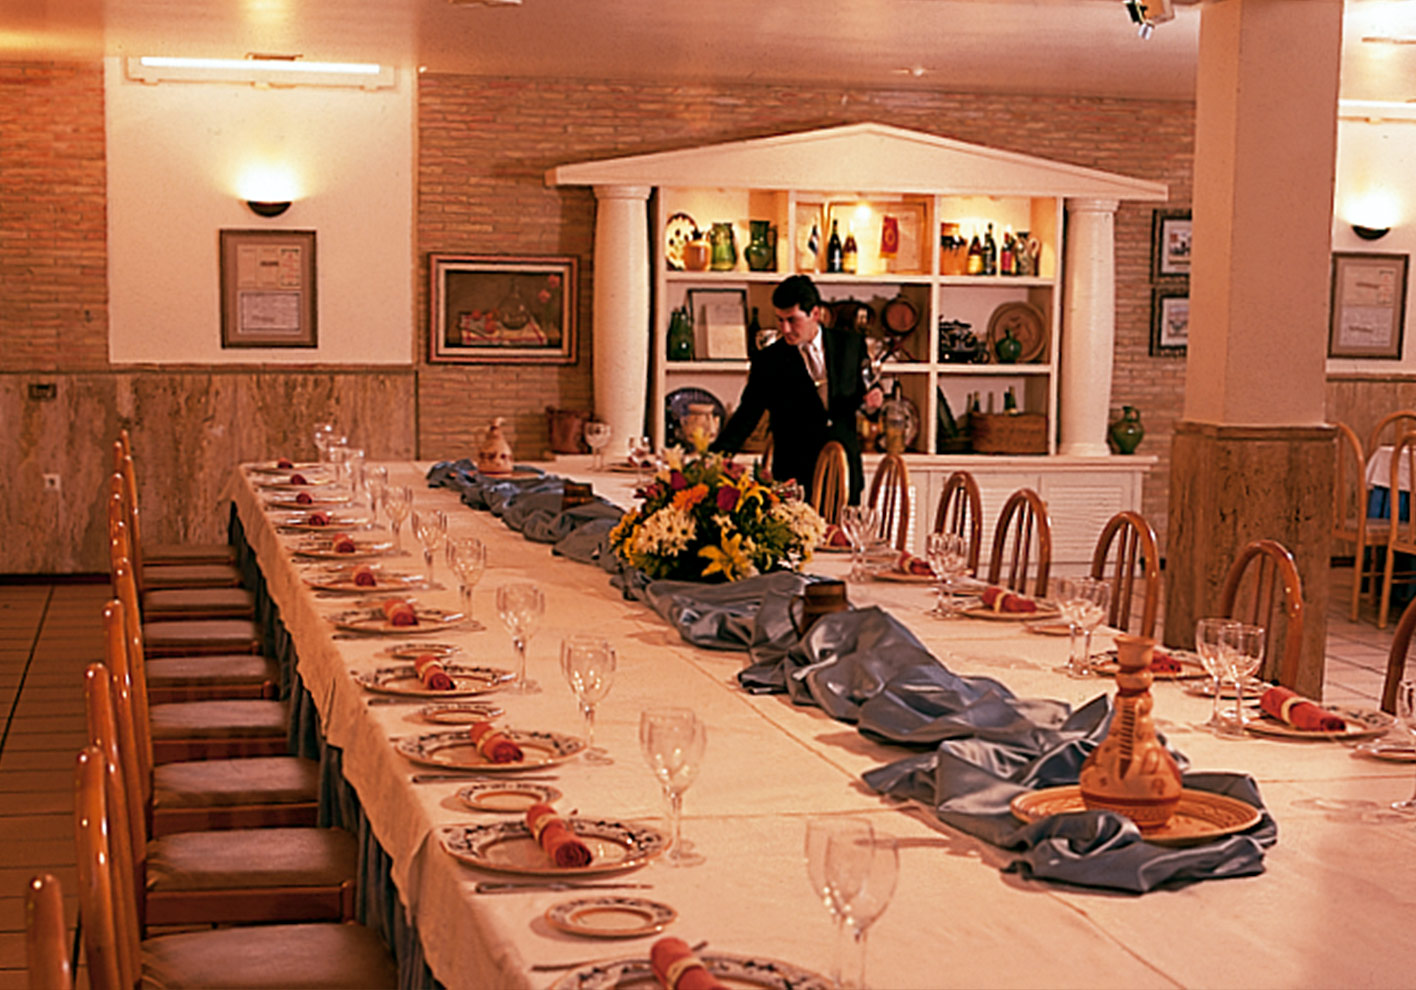 Private Dining Room 06 - Hotel Restaurante Terraza Carmona in Vera, Almeria